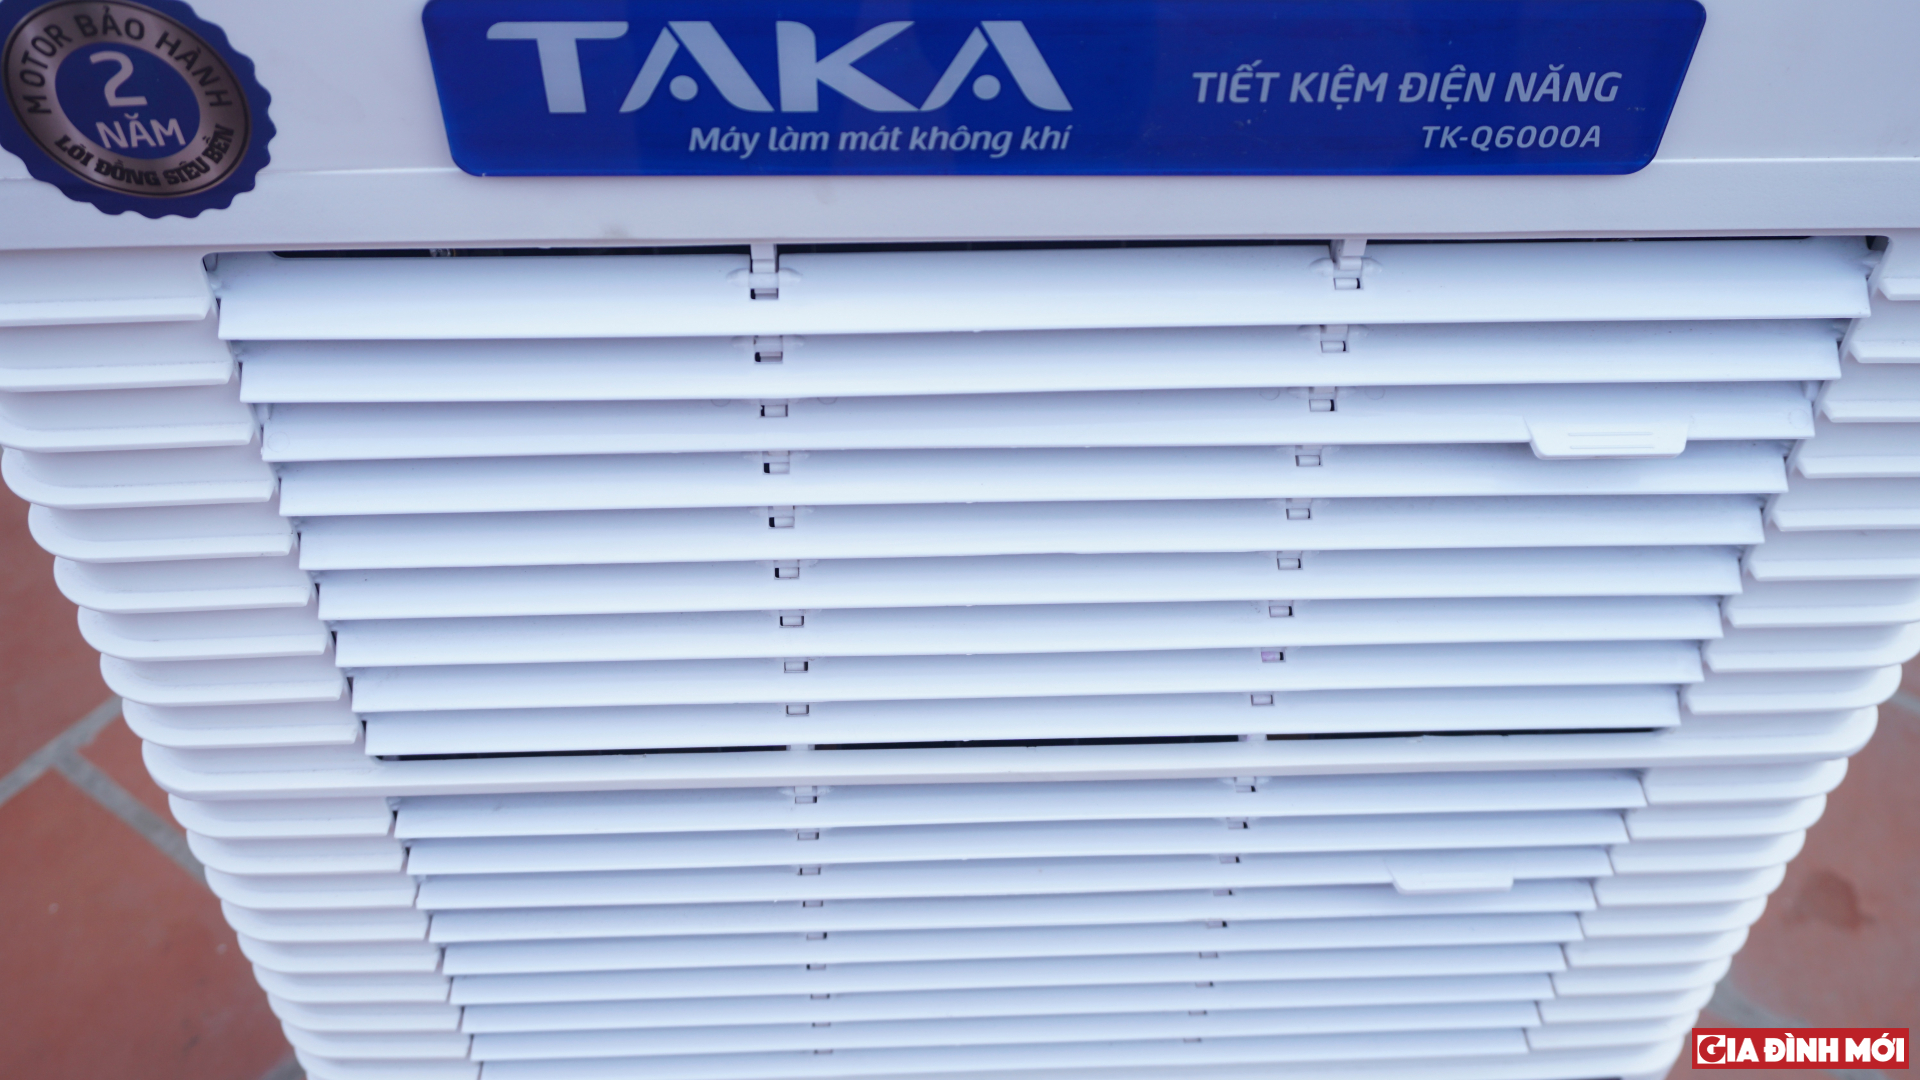 Đánh giá máy làm mát không khí Taka TK-Q6000A: Làm mát nhanh, siêu tiết kiệm điện, giá 5,5 triệu đồng 11